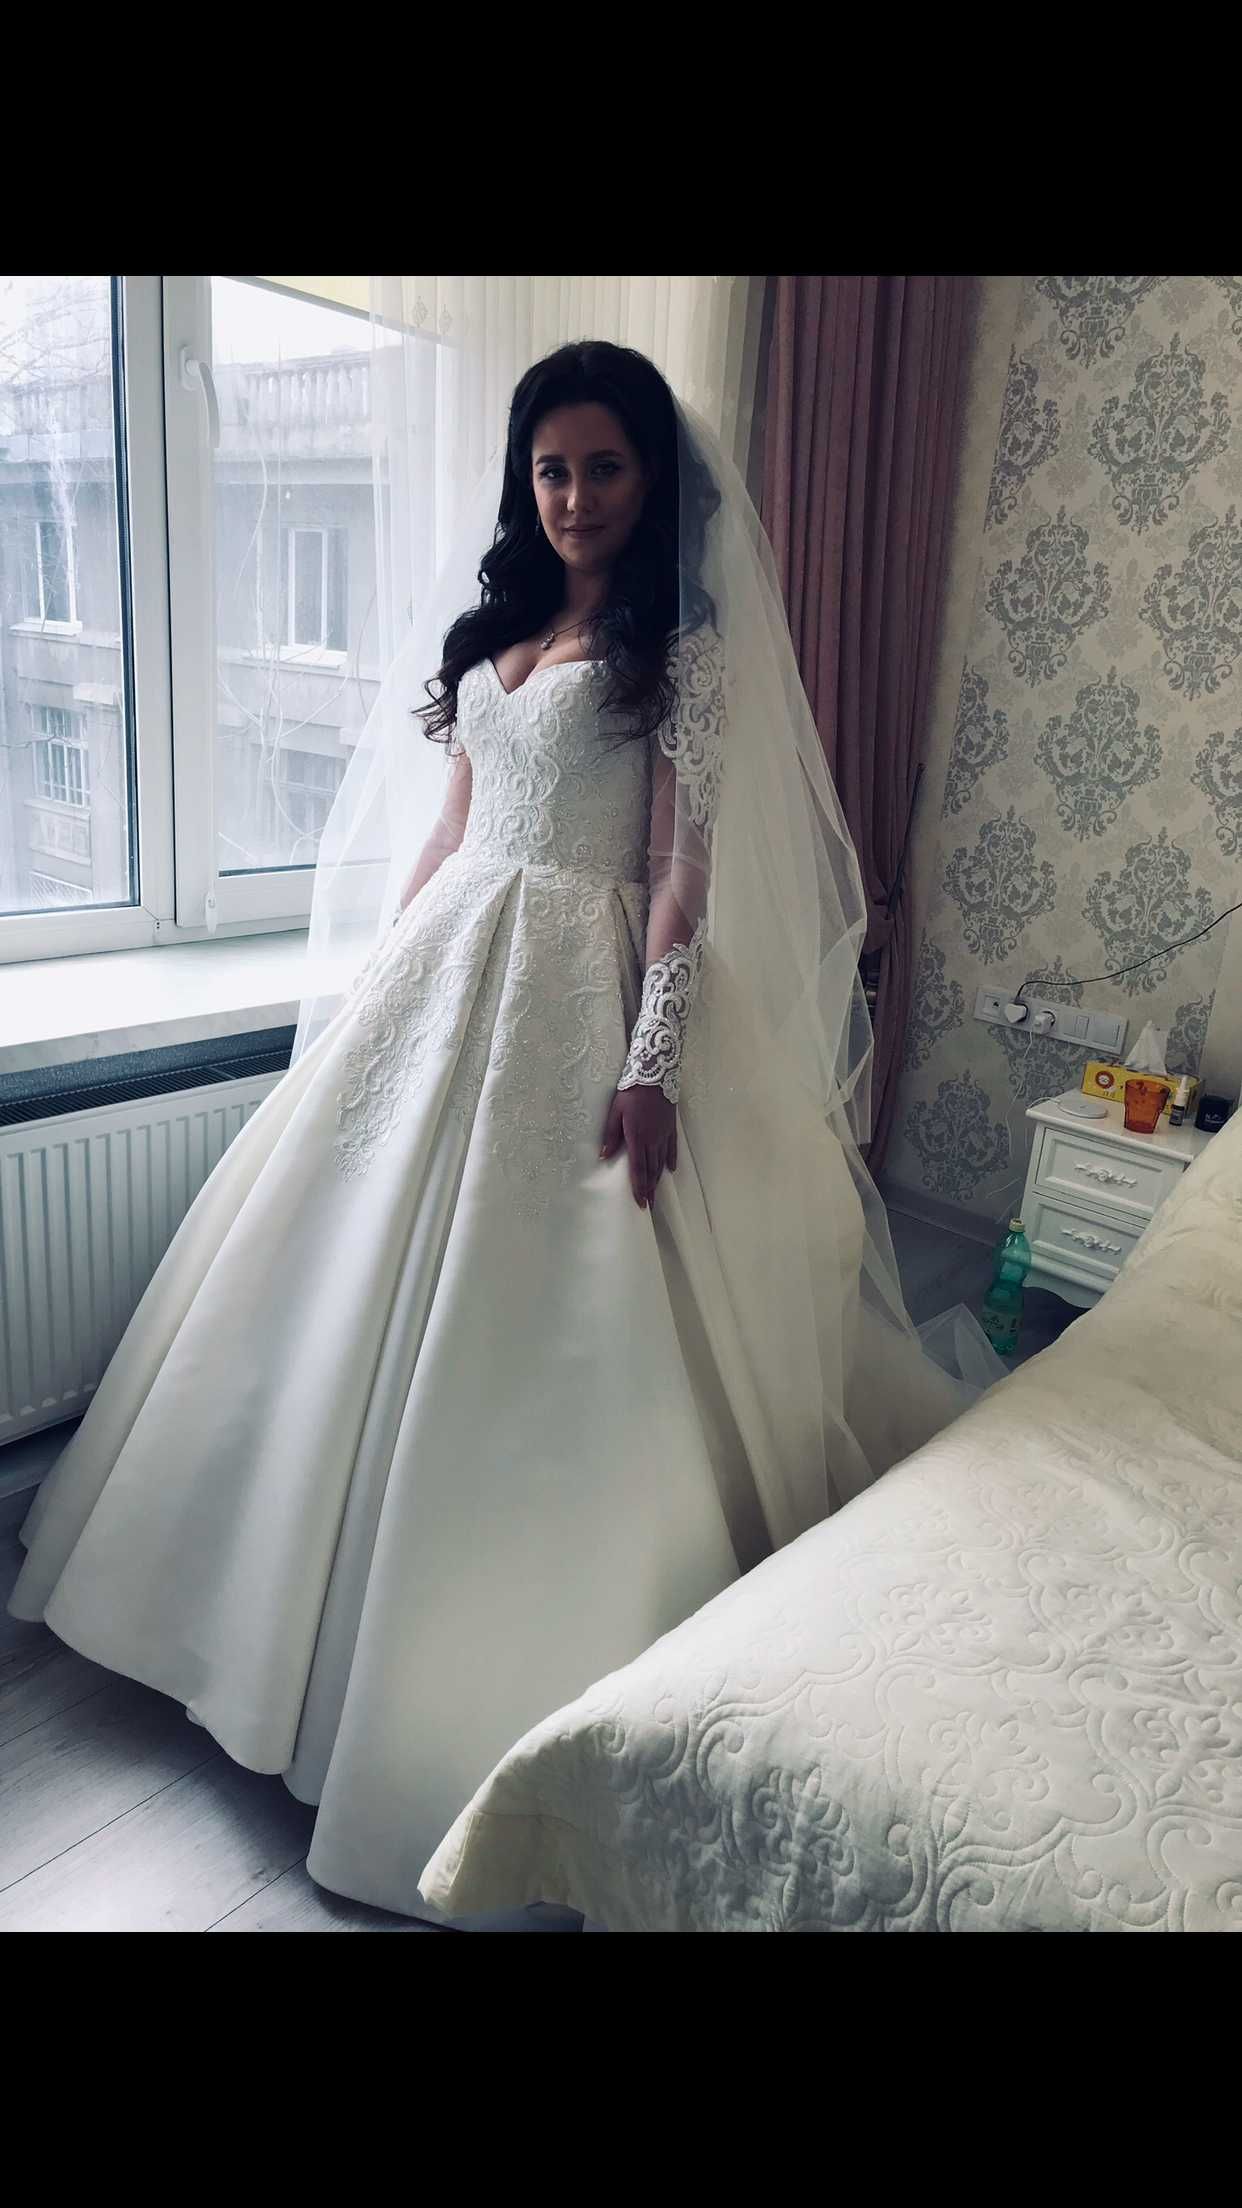 Сказочно красивое свадебное платье